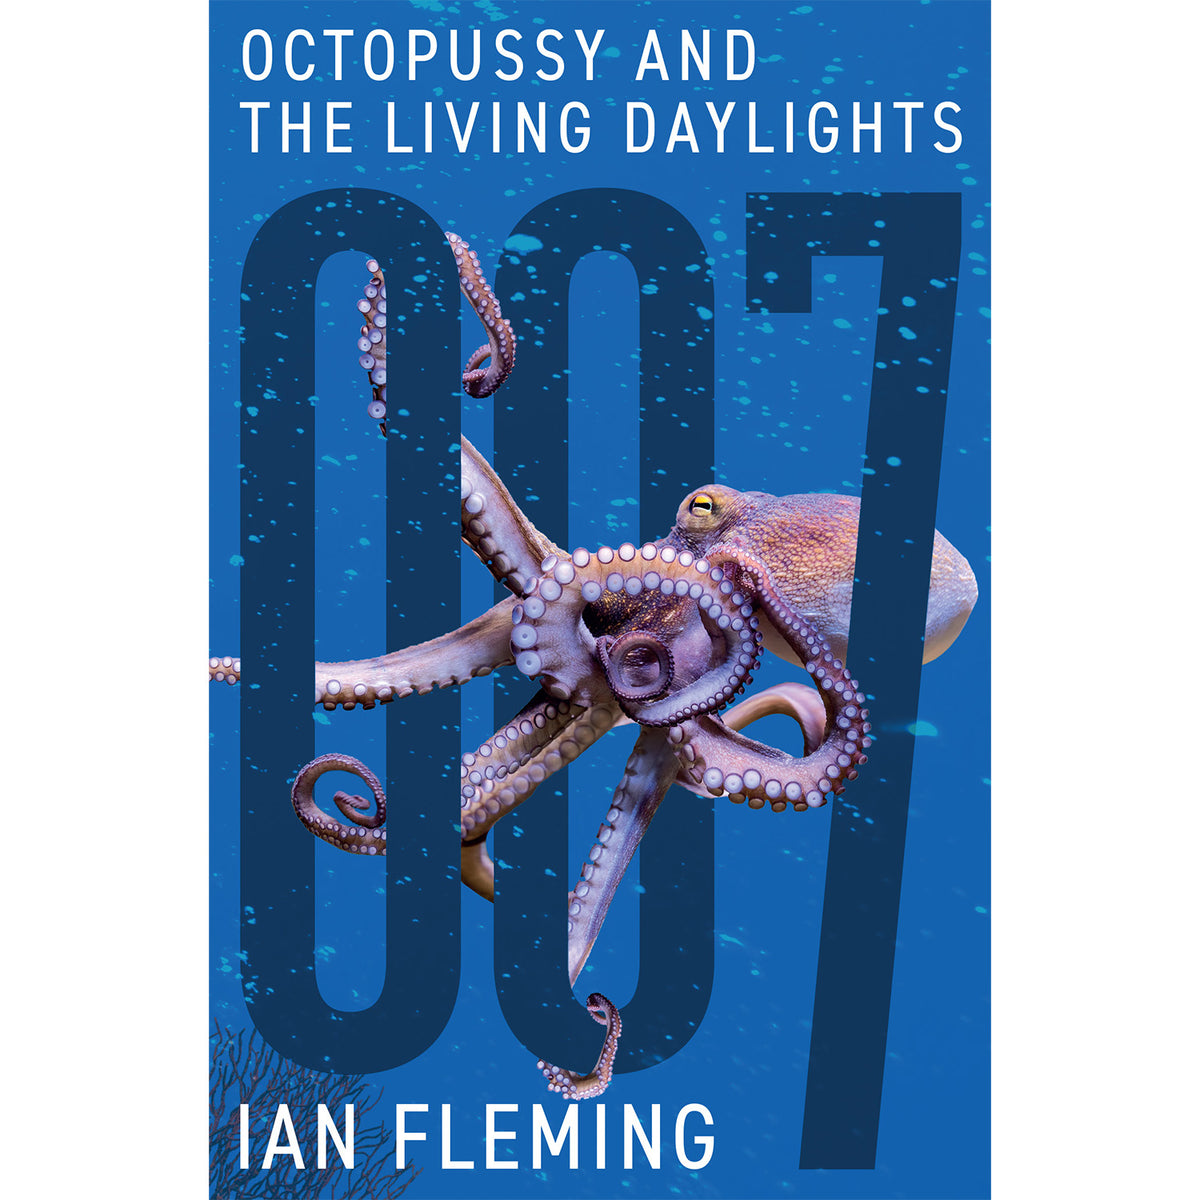 James Bond Octopussy und das Buch „Der Hauch des Todes“ – von Ian Fleming